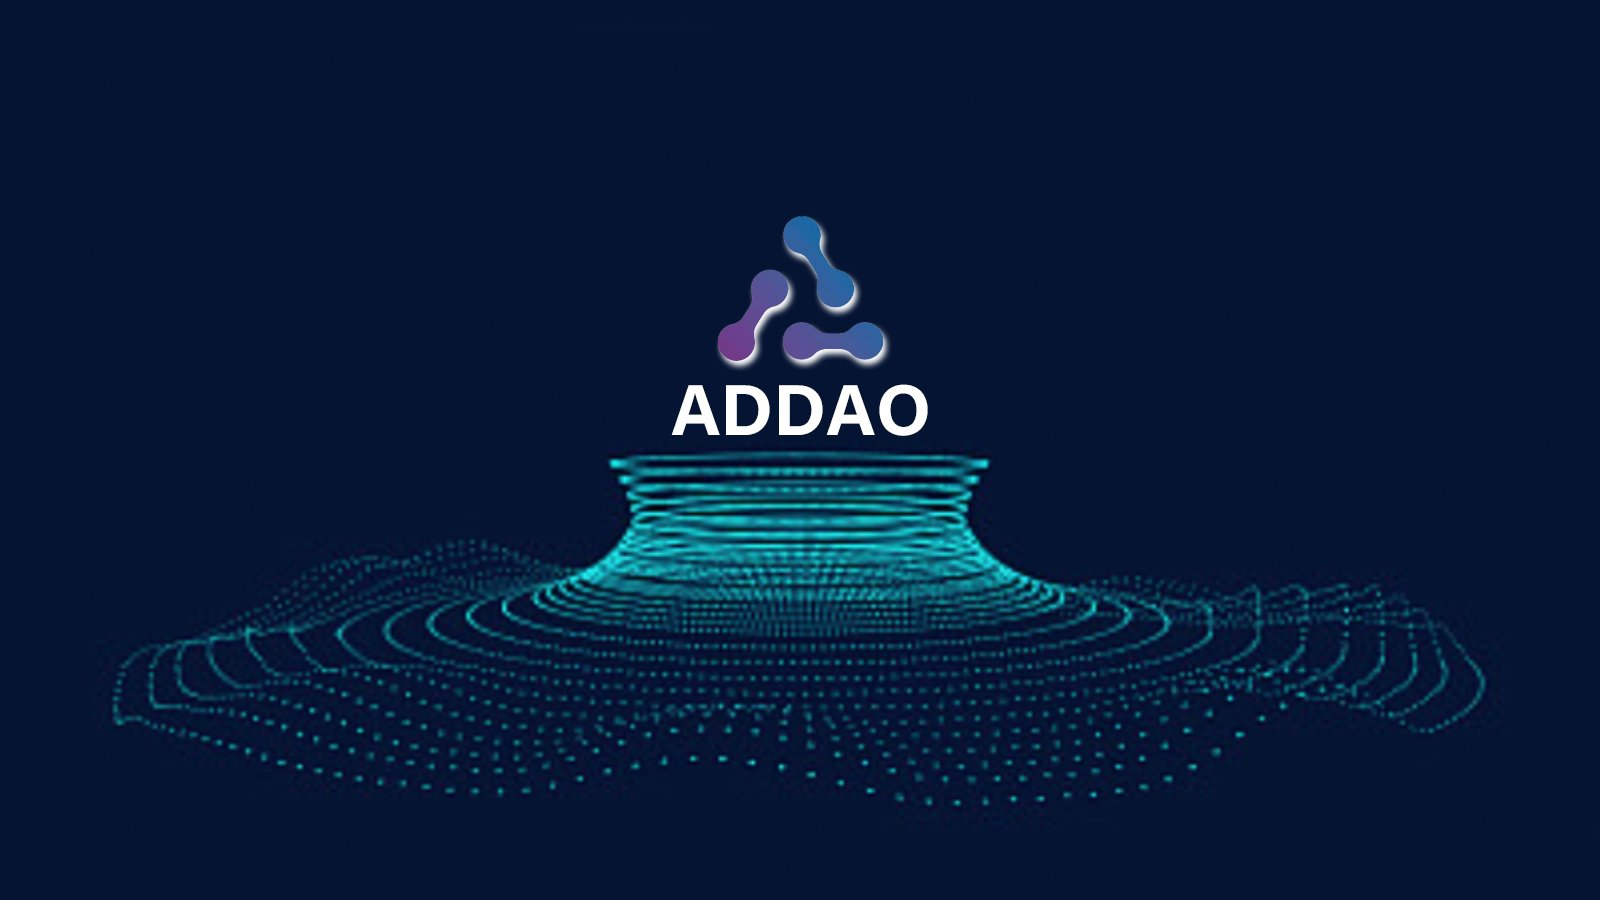 WEB3.0 주요 이정표: ADDAO 블록체인 광고 기술 플랫폼이 정식 출시됩니다!